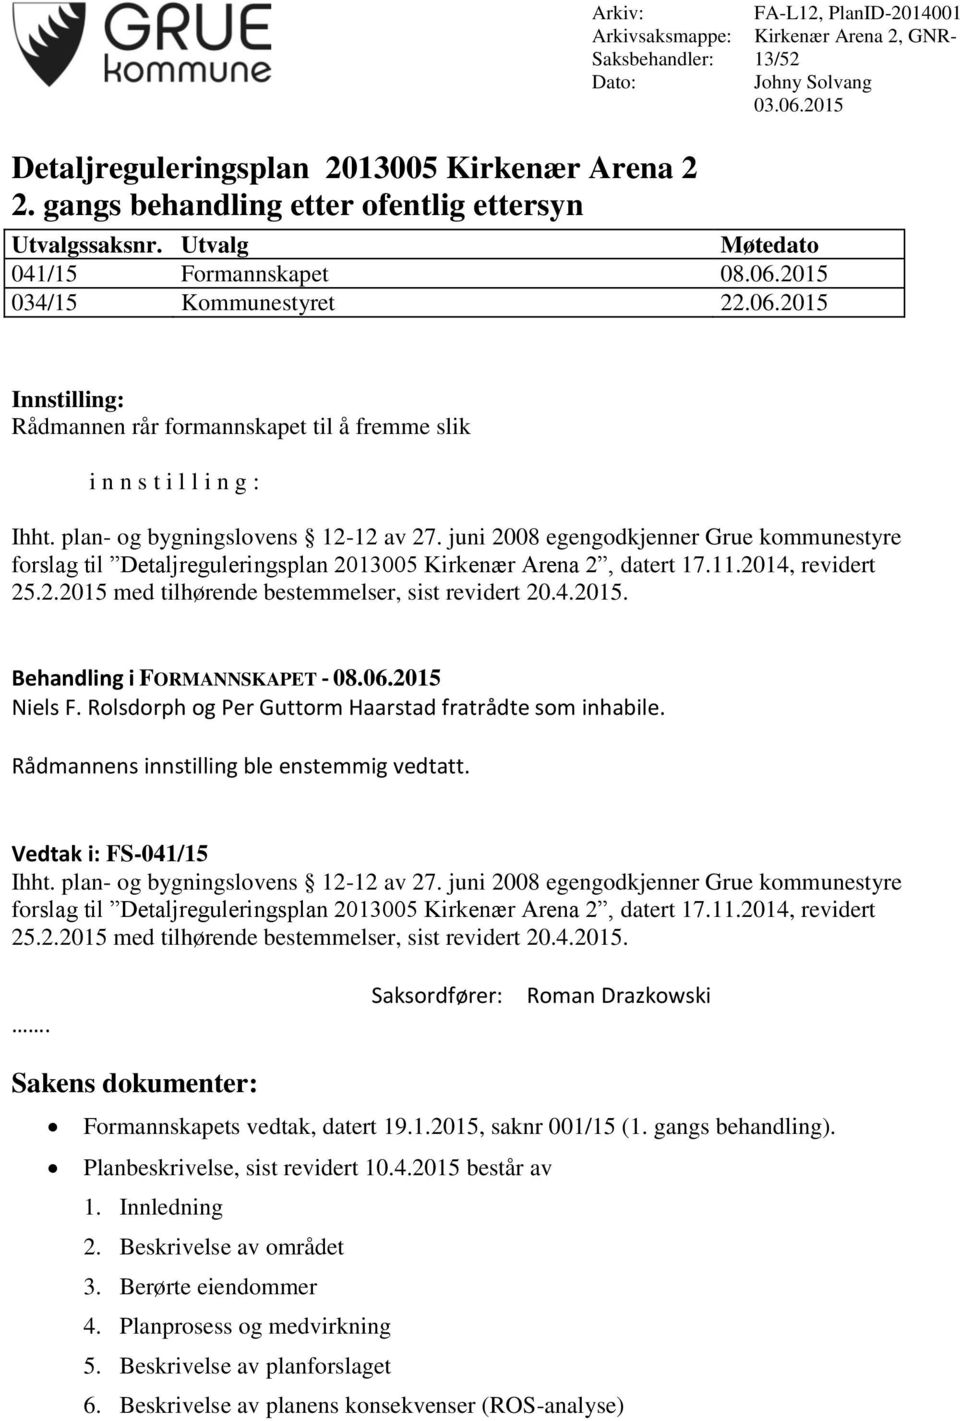 plan- og bygningslovens 12-12 av 27. juni 2008 egengodkjenner Grue kommunestyre forslag til Detaljreguleringsplan 2013005 Kirkenær Arena 2, datert 17.11.2014, revidert 25.2.2015 med tilhørende bestemmelser, sist revidert 20.